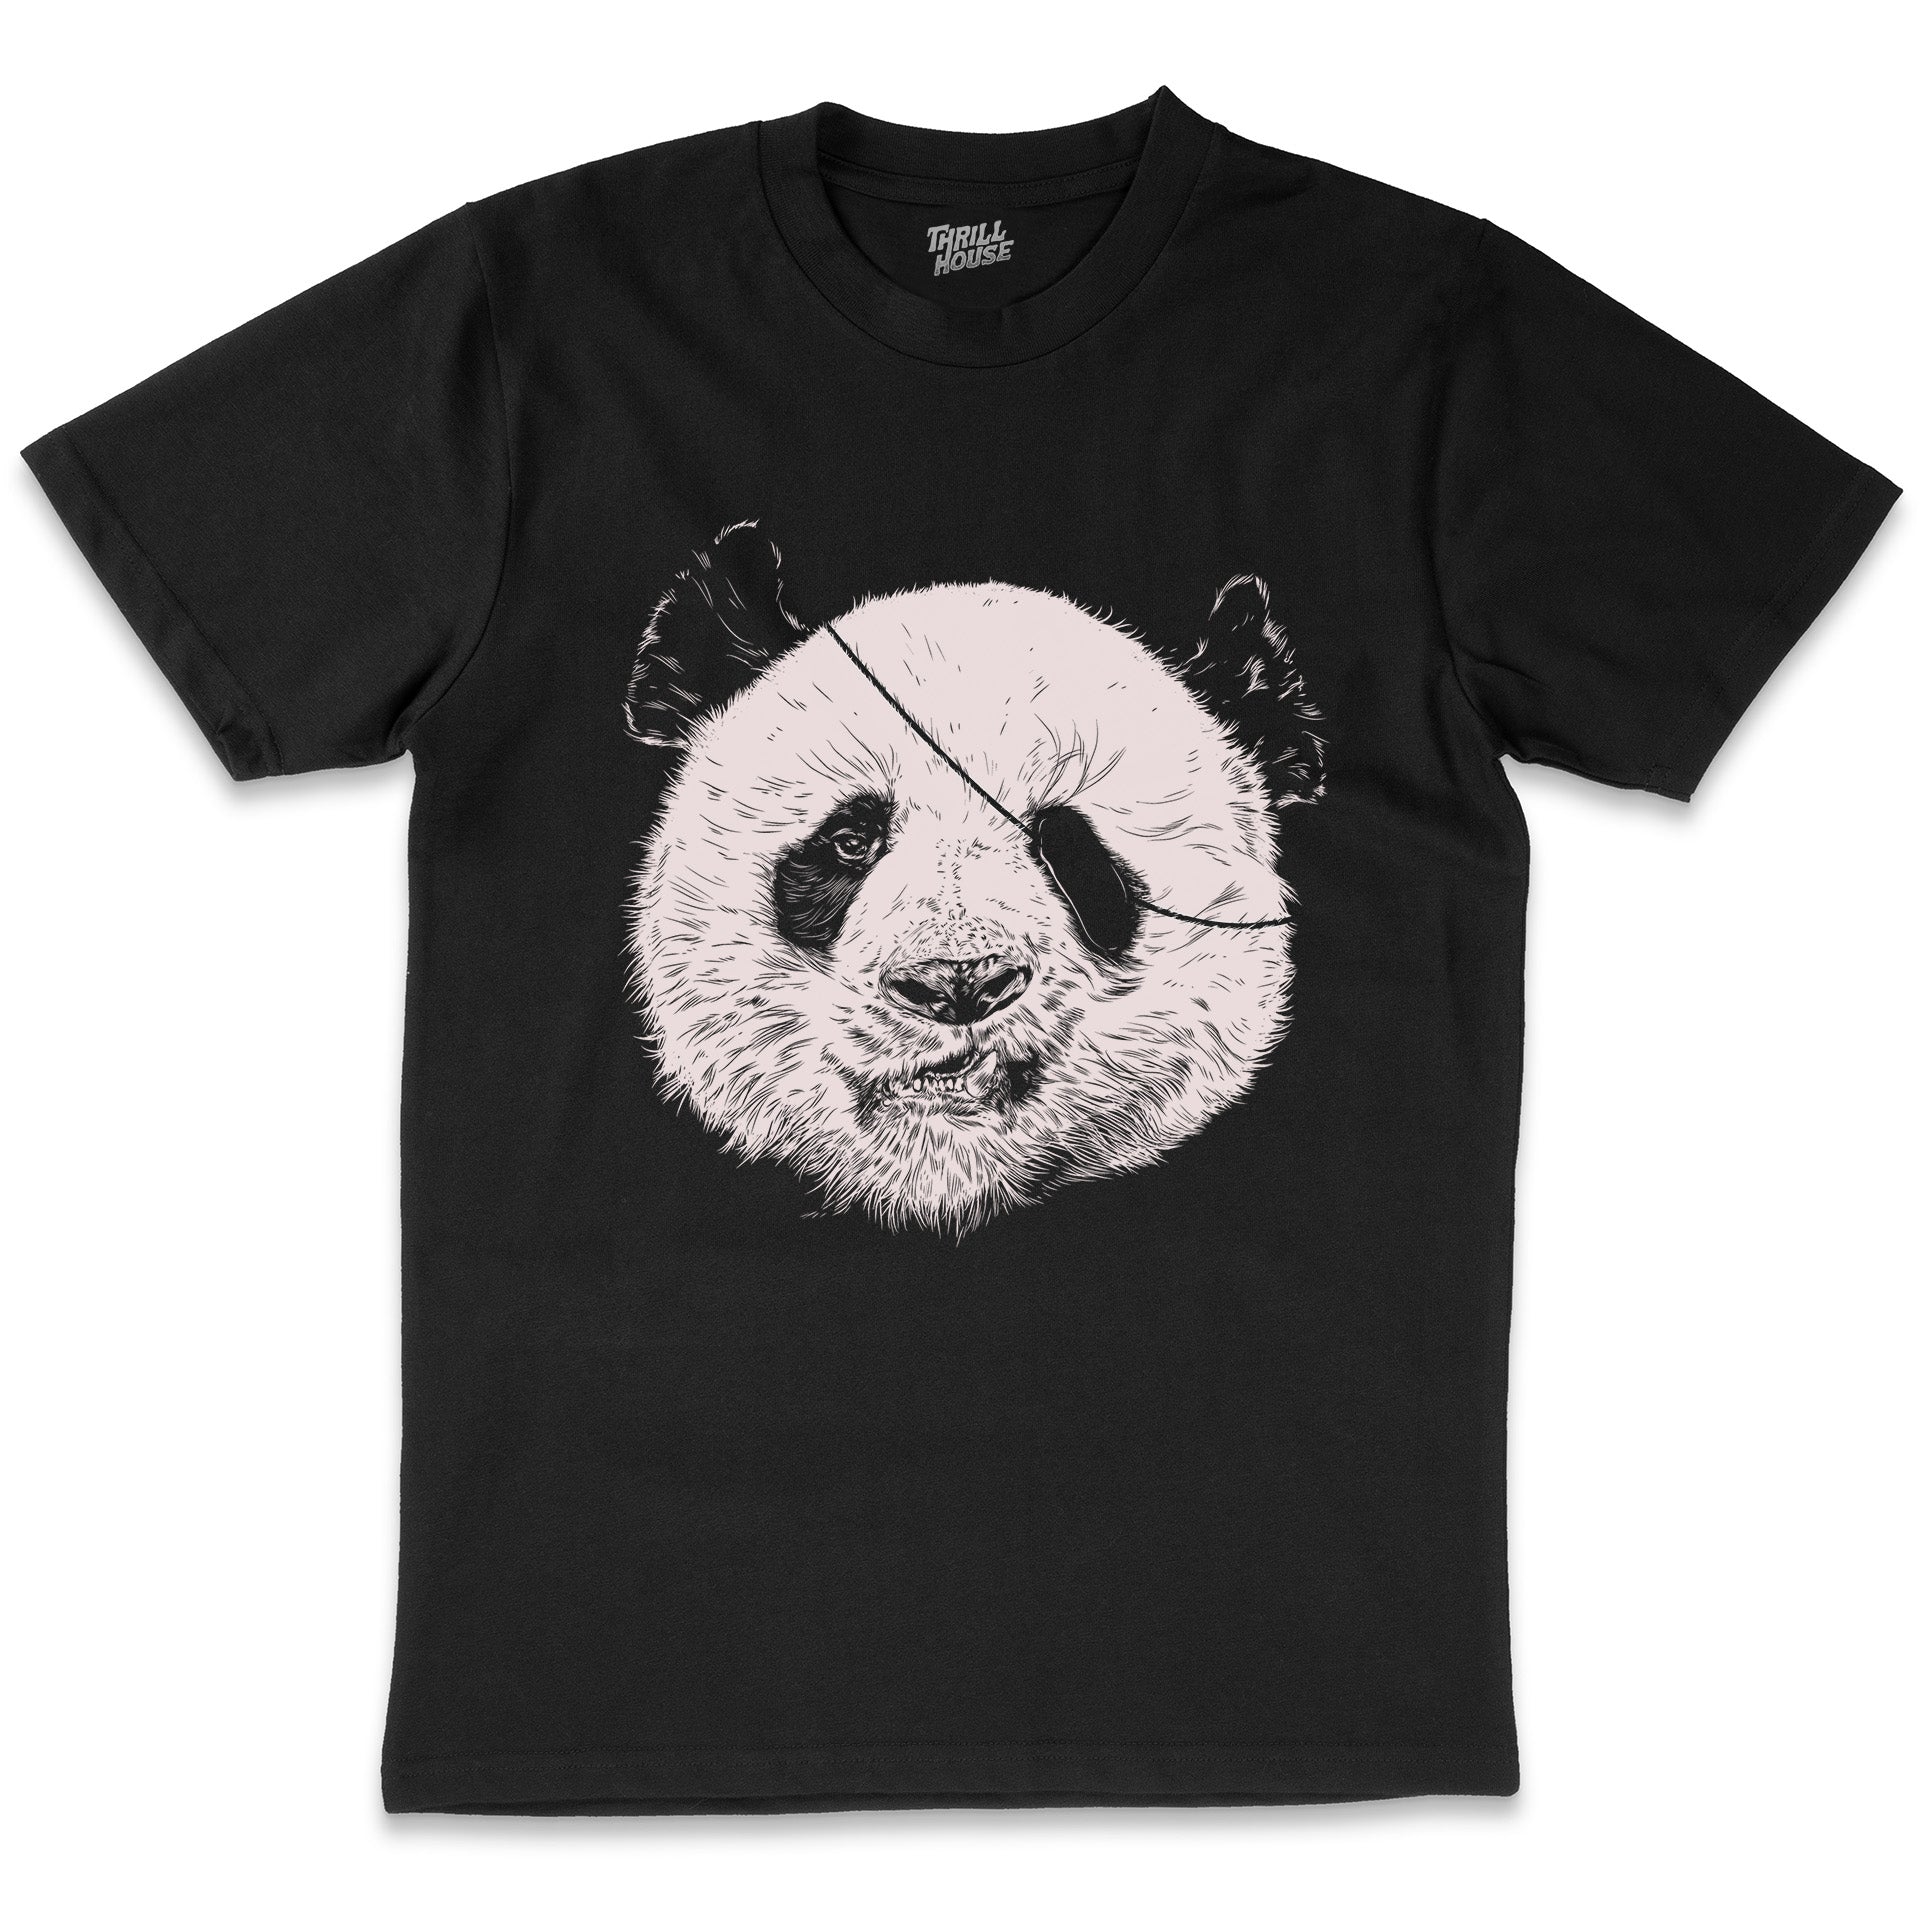 Endangered Pirate Artsy Panda Bear Animal Cool Design Cotton T-Shirt